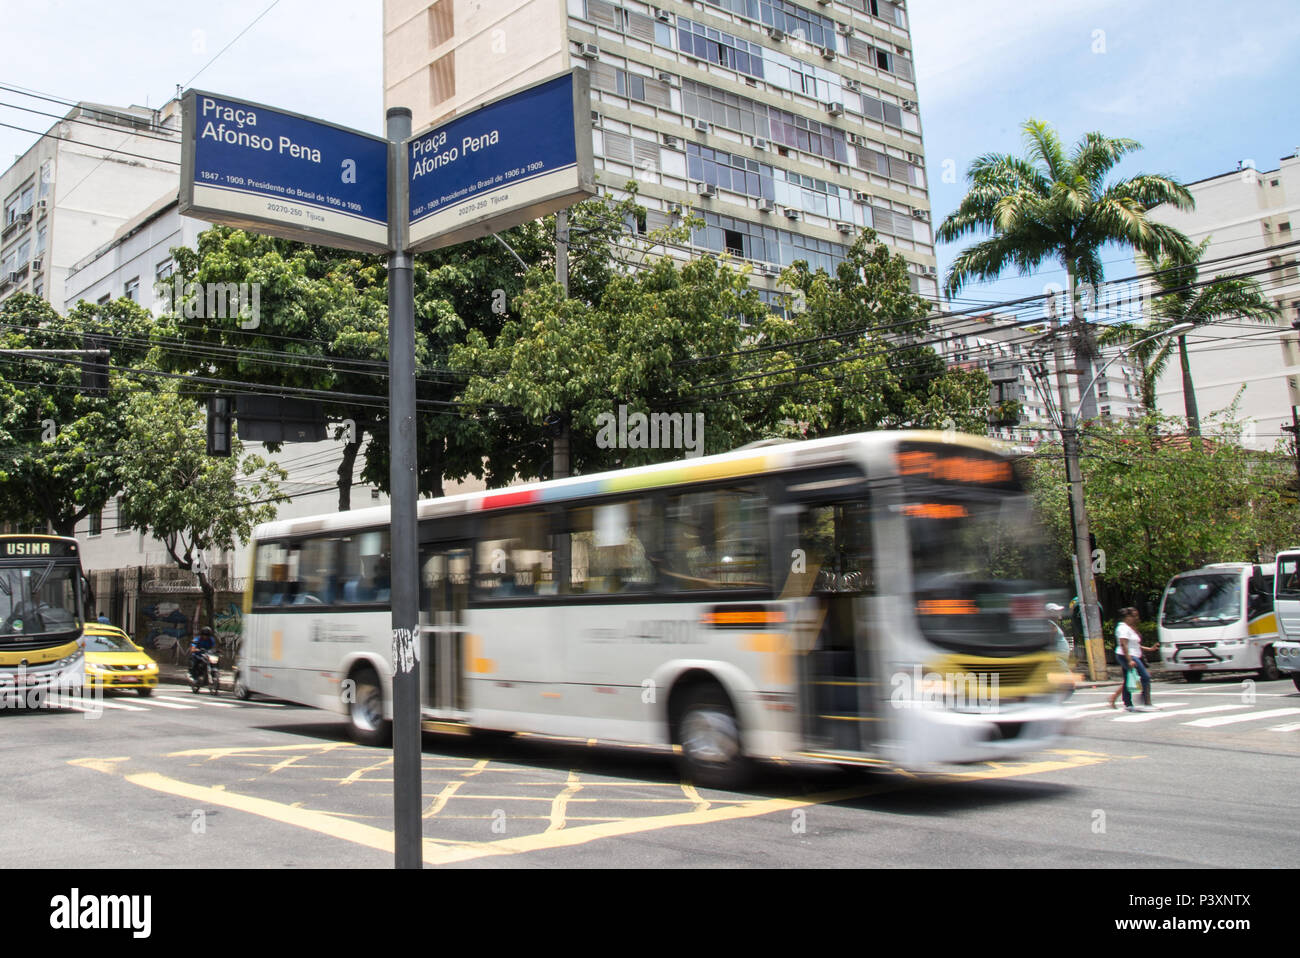 Placa indicativa com o nome da Praça Afonso Pena, Tijuca na zona norte da Cidade do Rio de Janeiro. L'accès à l'Afonso Pena presidente do Brasil de 1906 a 1909 Banque D'Images